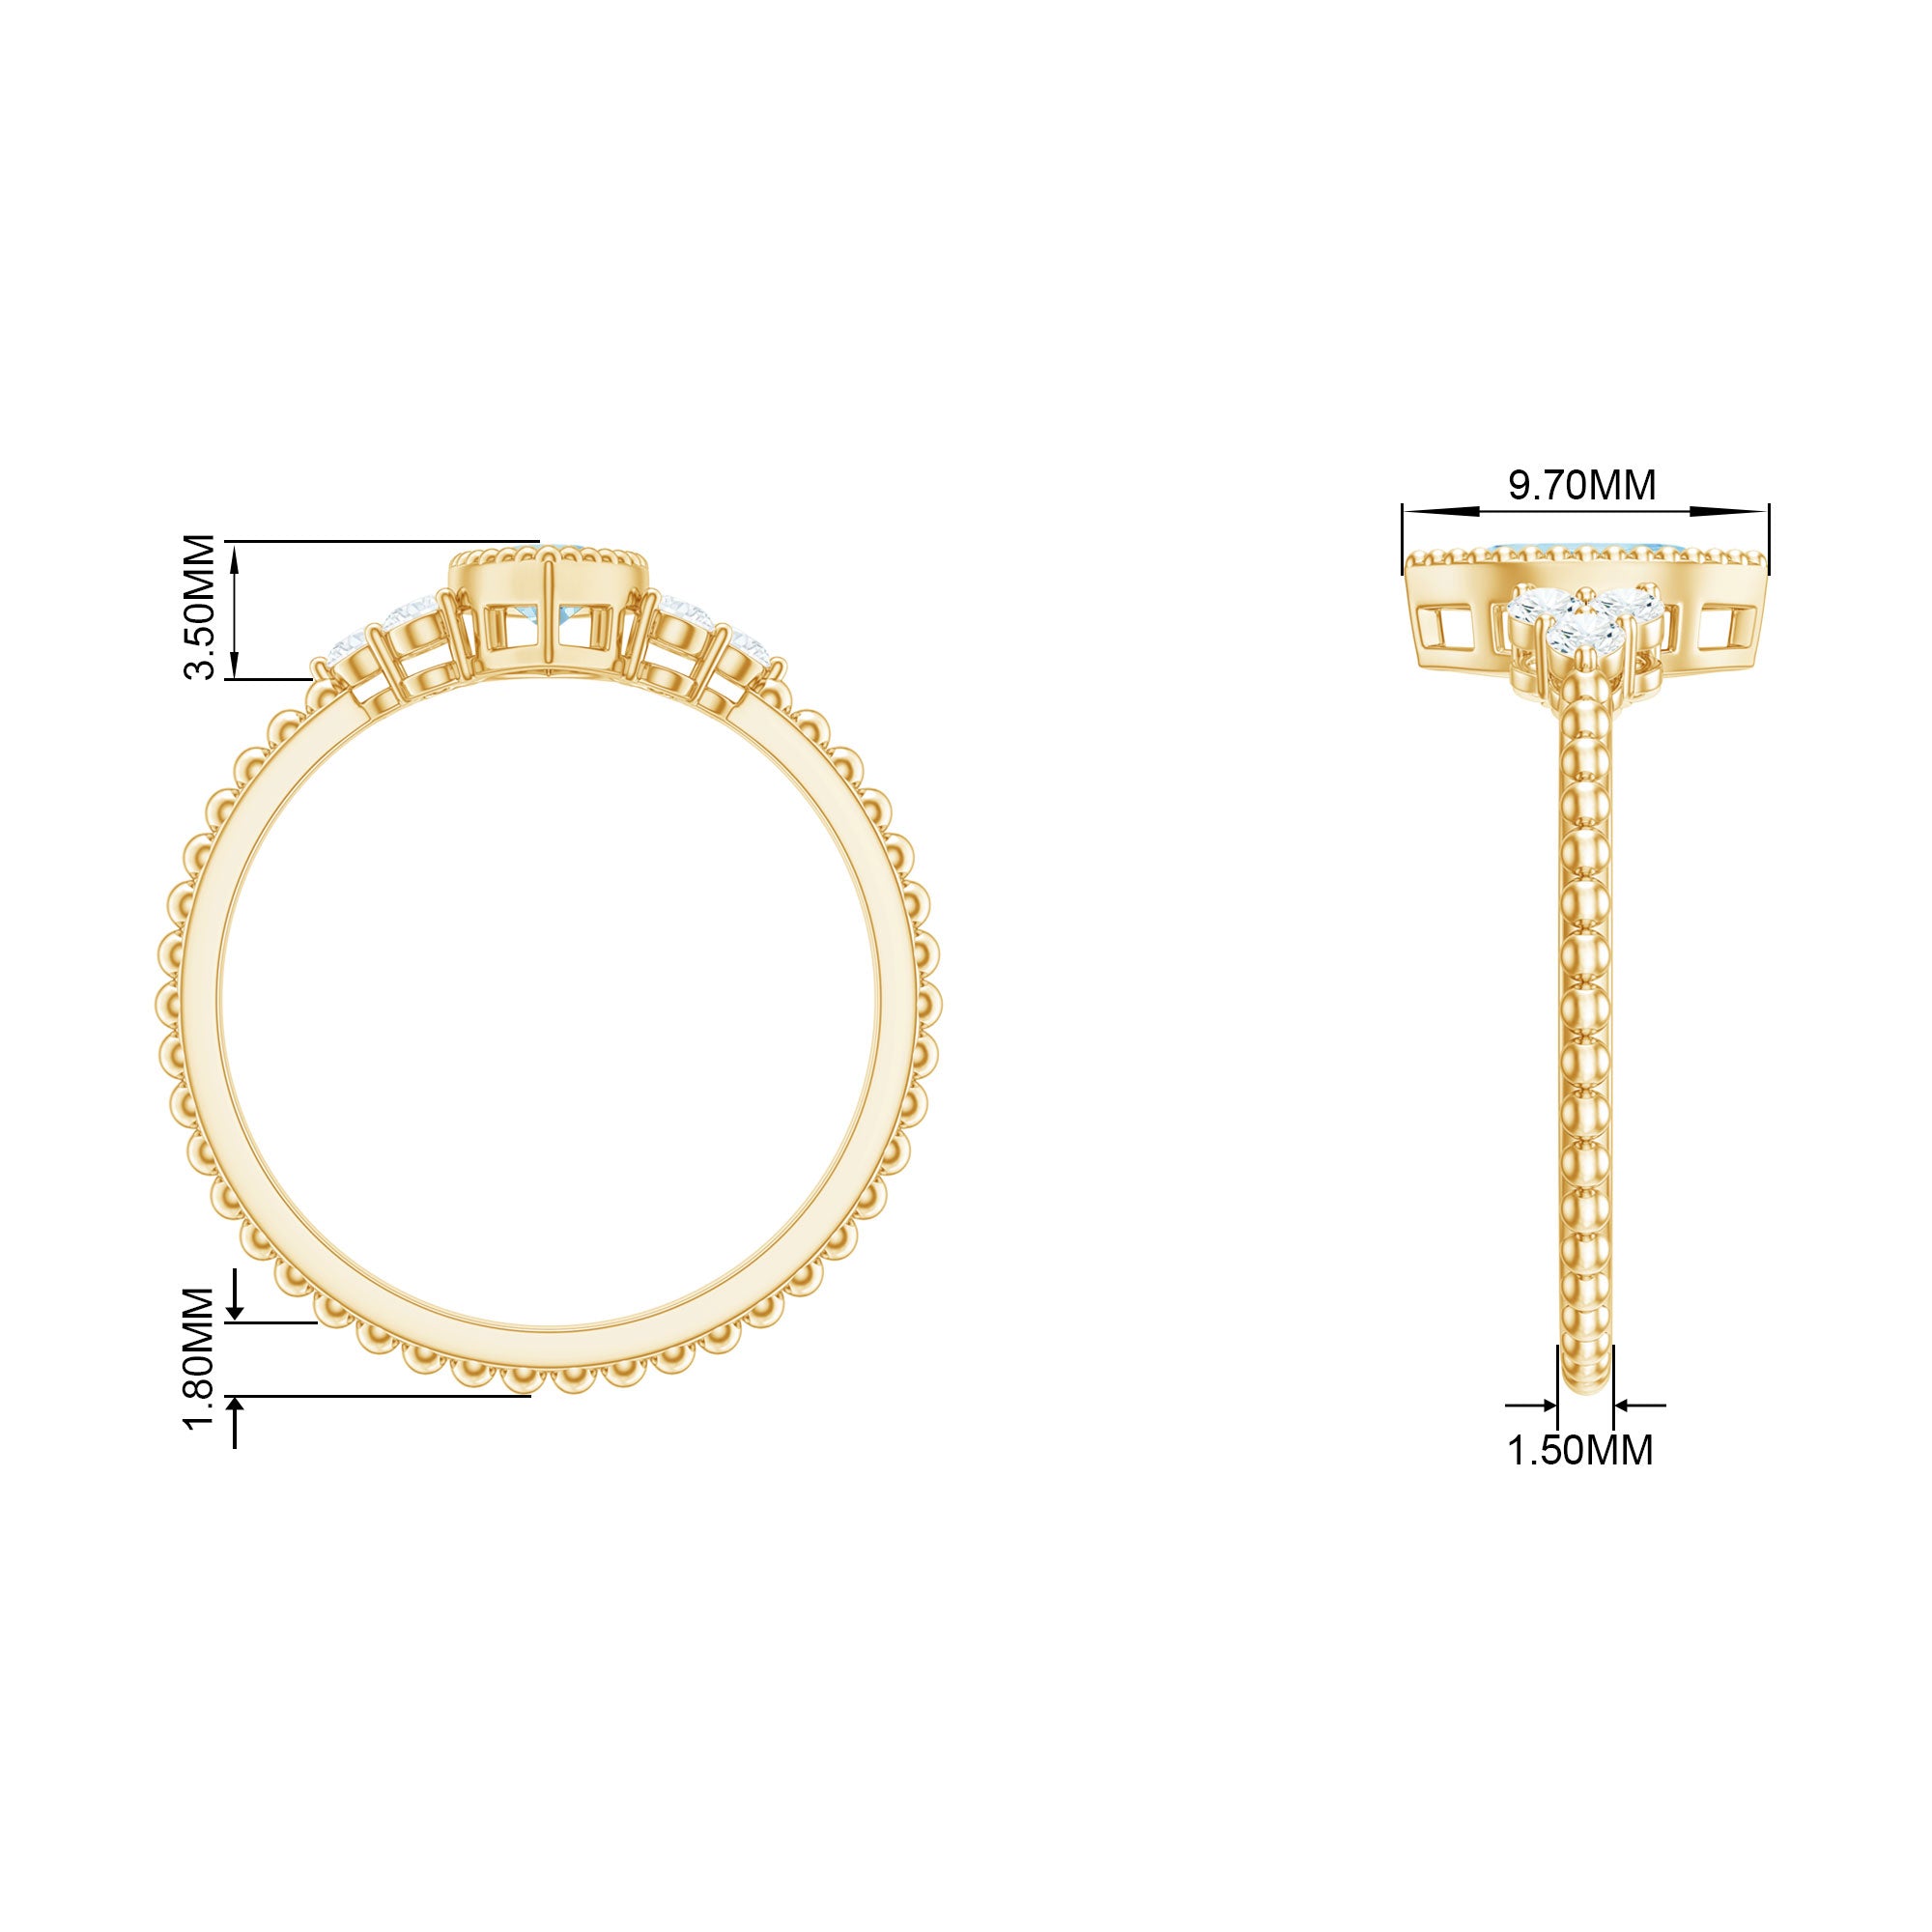 Marquise Cut Aquamarine Solitaire Promise Ring with Diamond Trio Aquamarine - ( AAA ) - Quality - Rosec Jewels